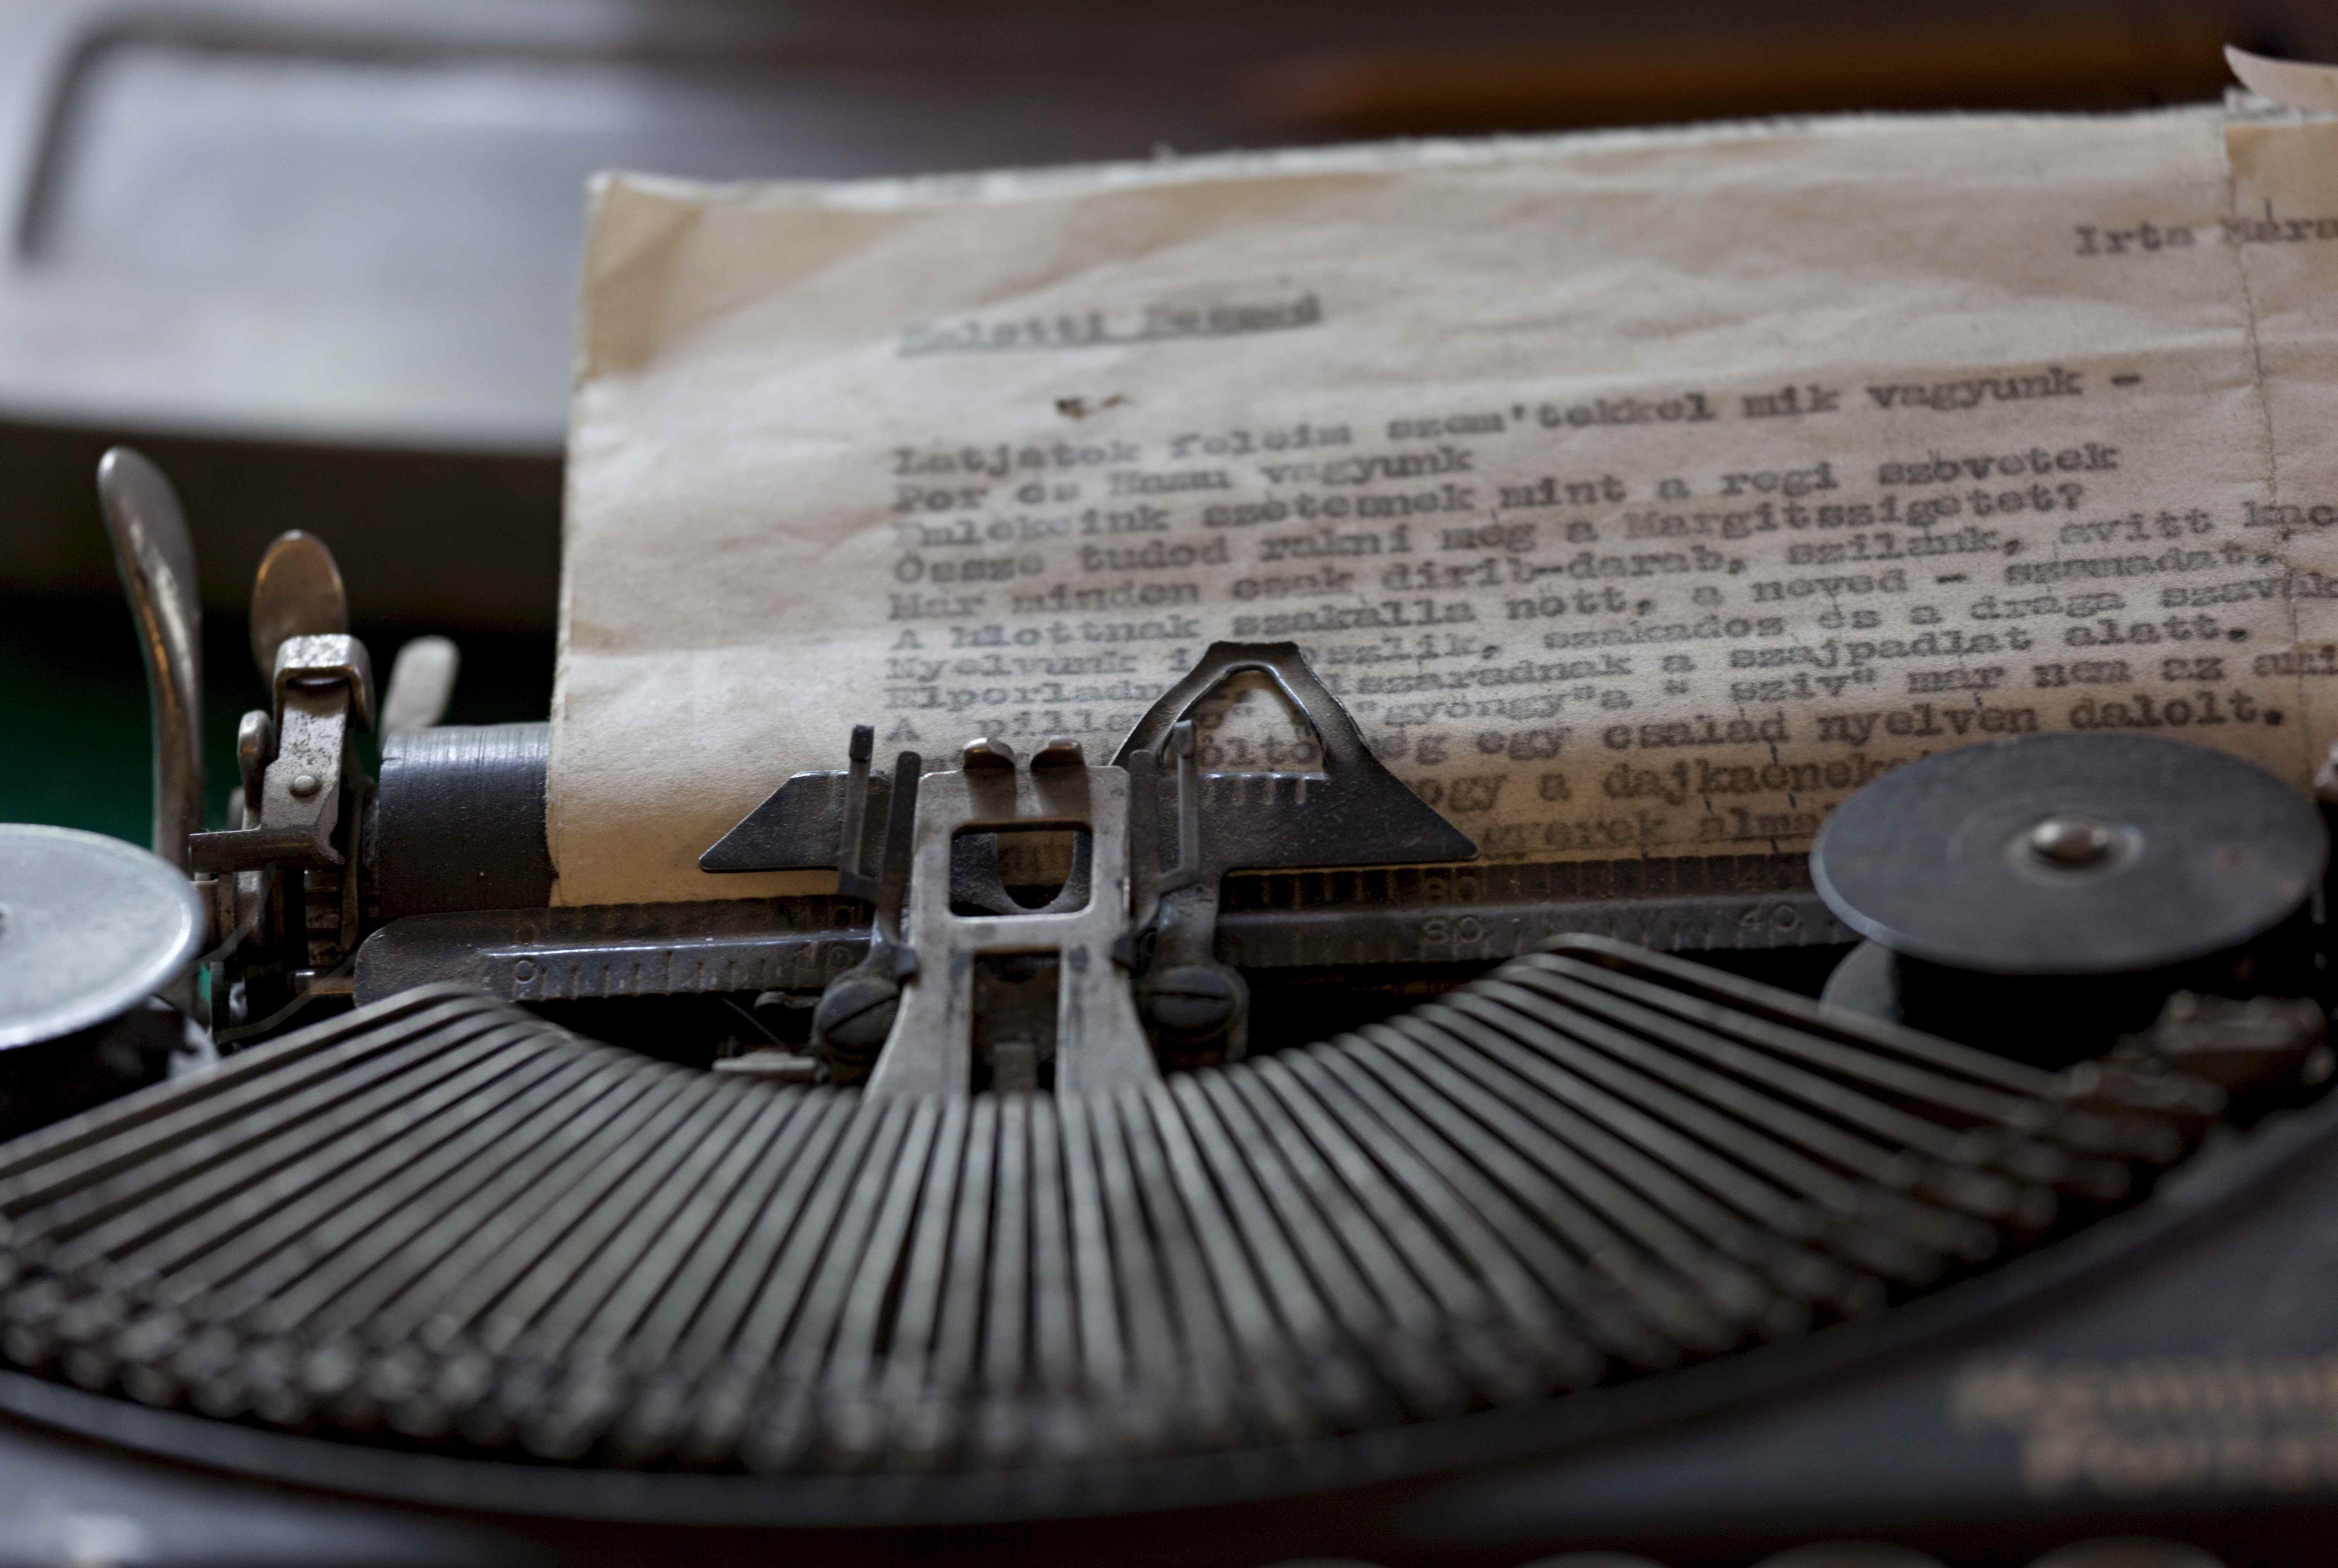 Dettaglio della macchina da scrivere di Sandor Marai